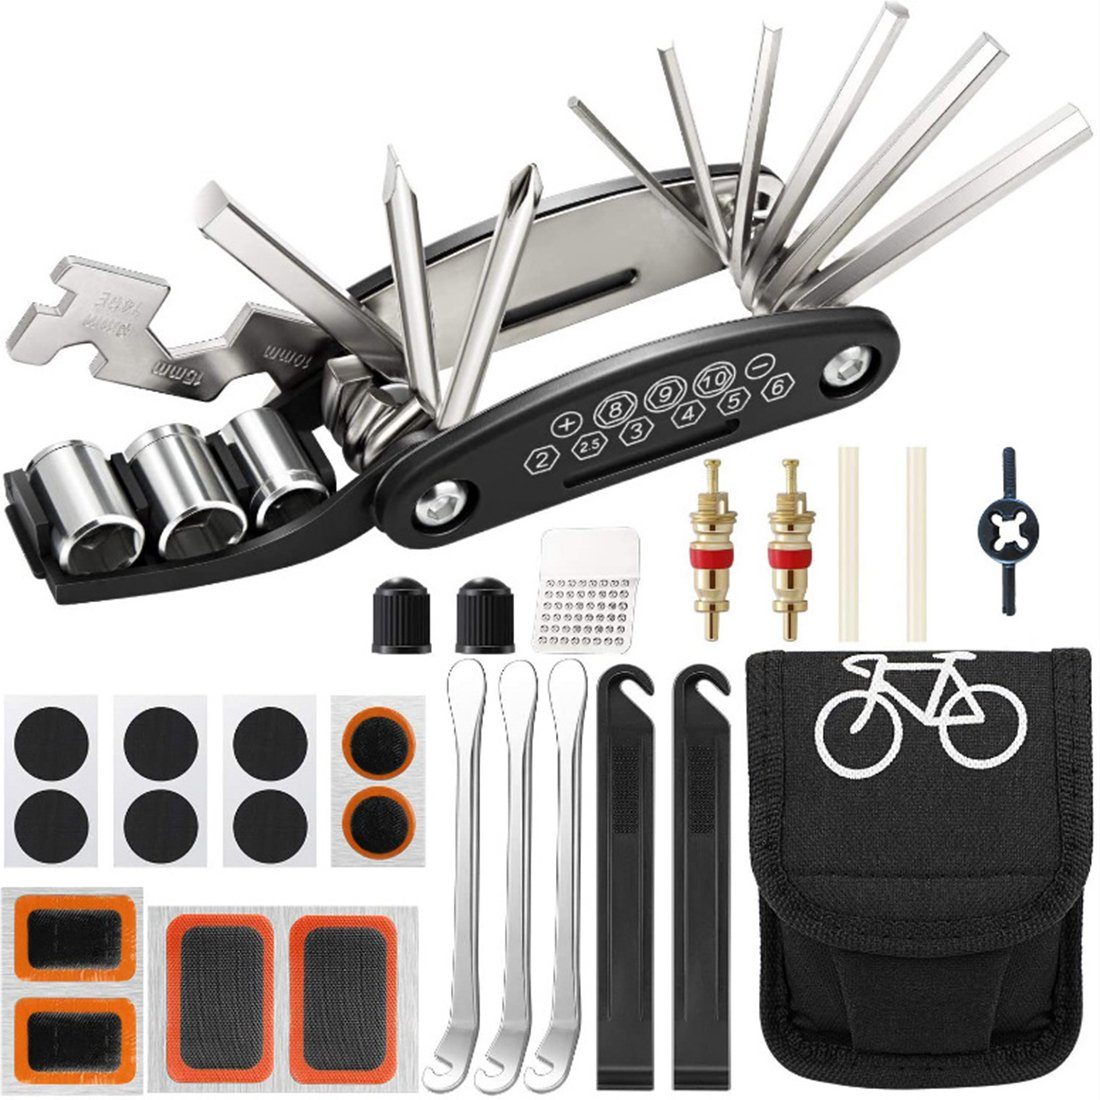 Haiaveng Fahrrad-Reparaturset Tasche für Multifunktionswerkzeug Fahrradflickzeug Werkzeuge Fahrrad in Reparatur, Reparaturset 16 1 Fahrrad-Multitool mit